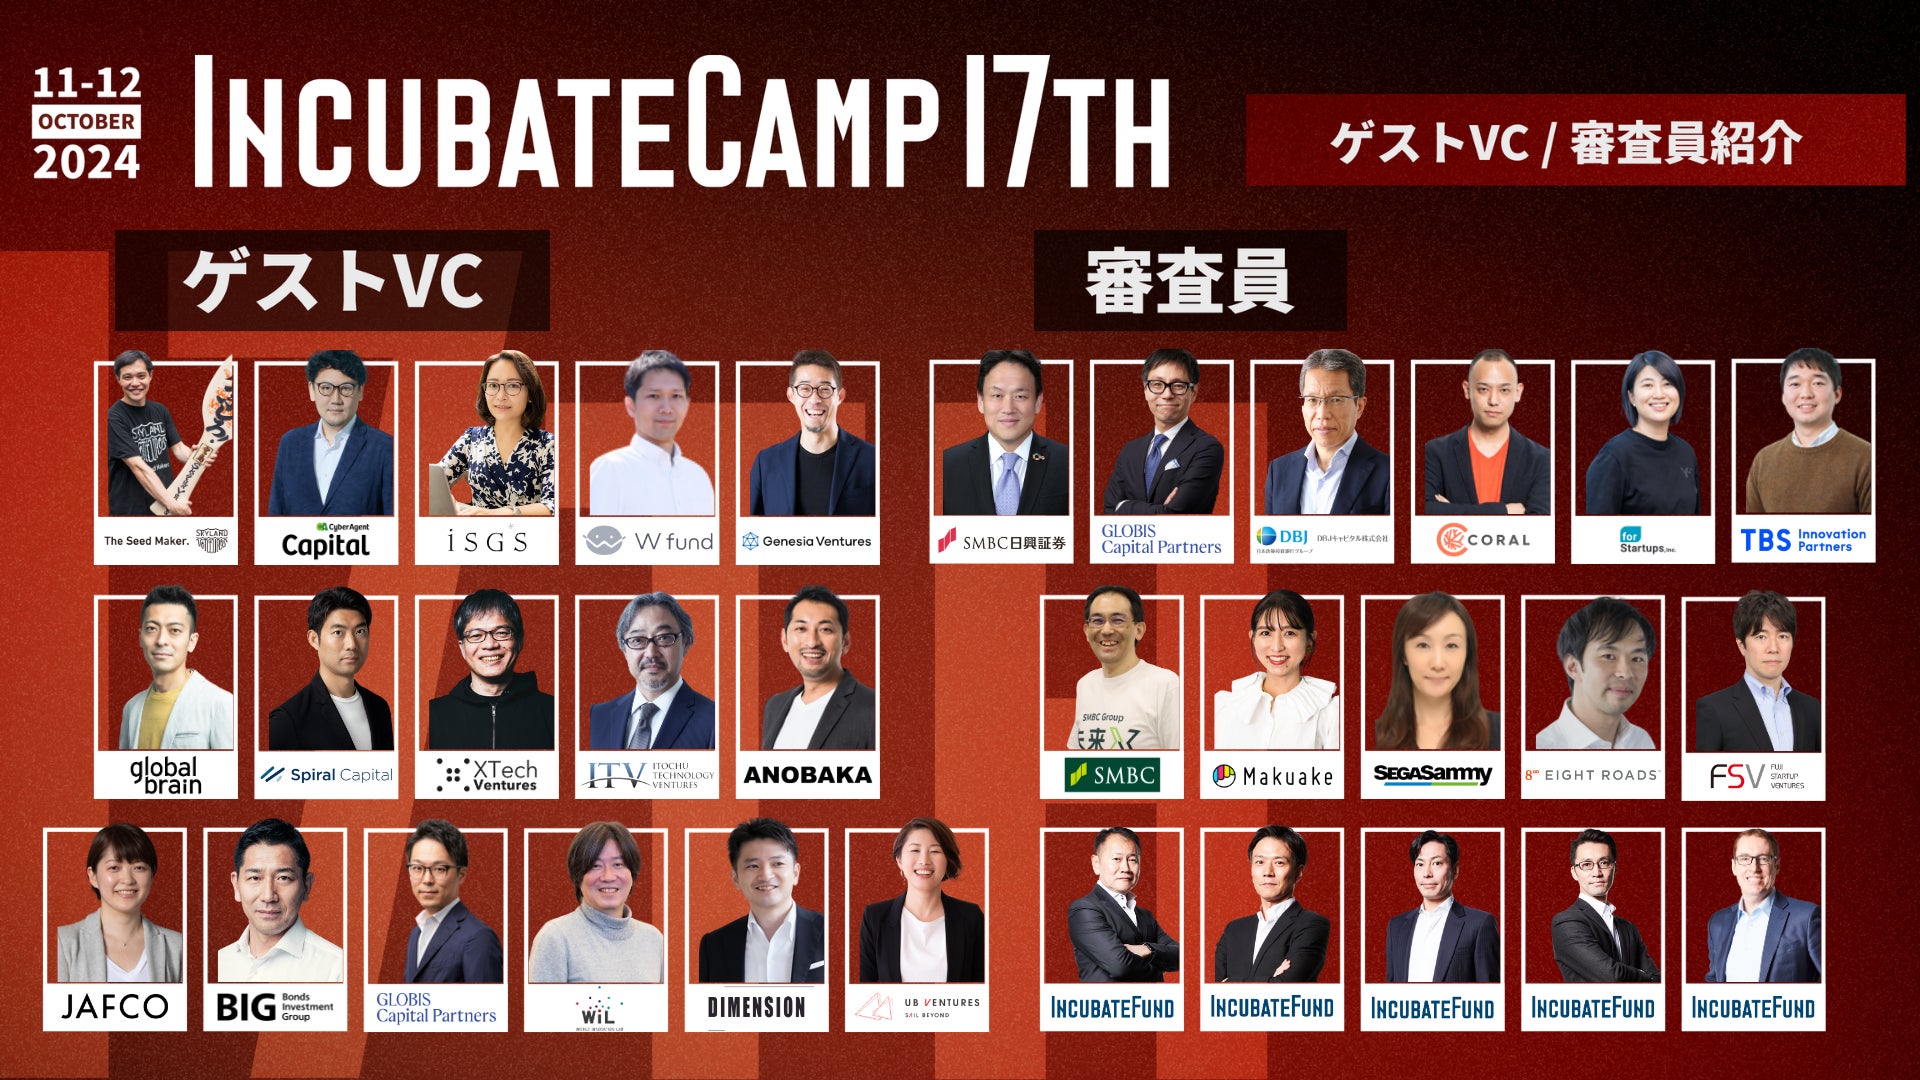 エントリー締切まで1ヶ月となった『Incubate Camp 17th』、参加ベンチャーキャピタリスト16名および審査員16名が決定！